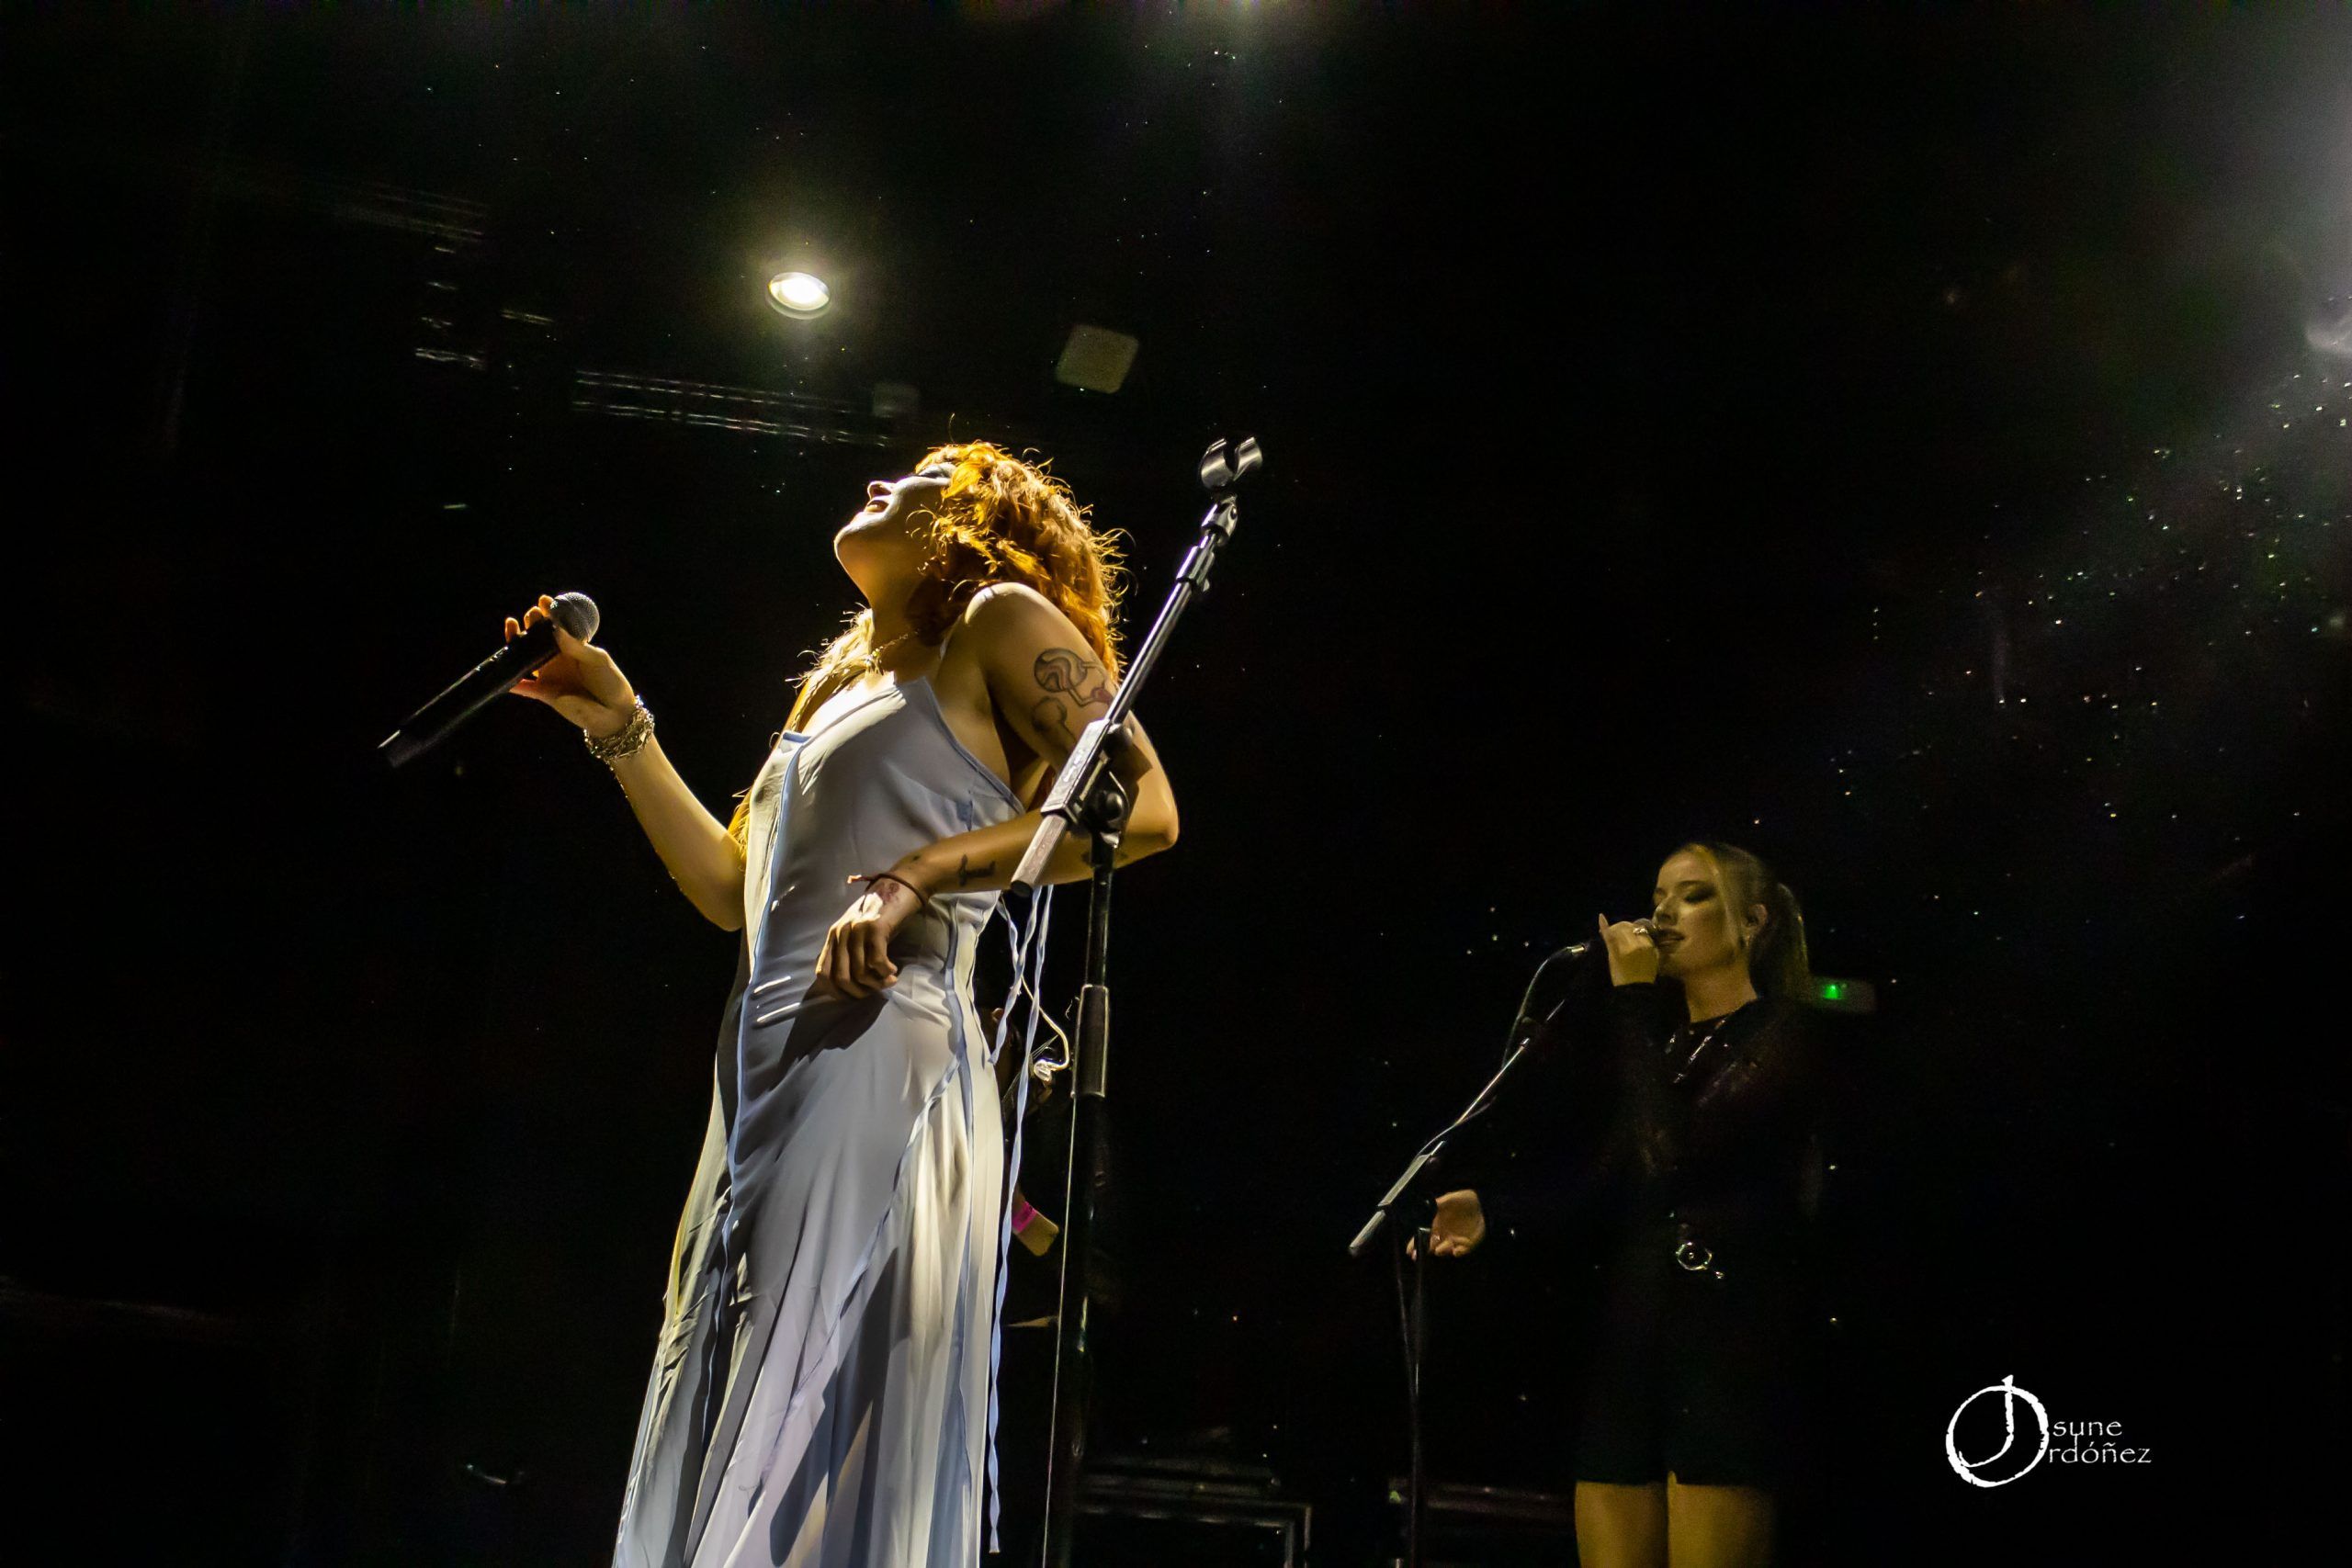 Alba Reche presenta su tour «Honestamente Triste» en la Sala Ocho y Medio Club. Fotografías por Josune Ordóñez